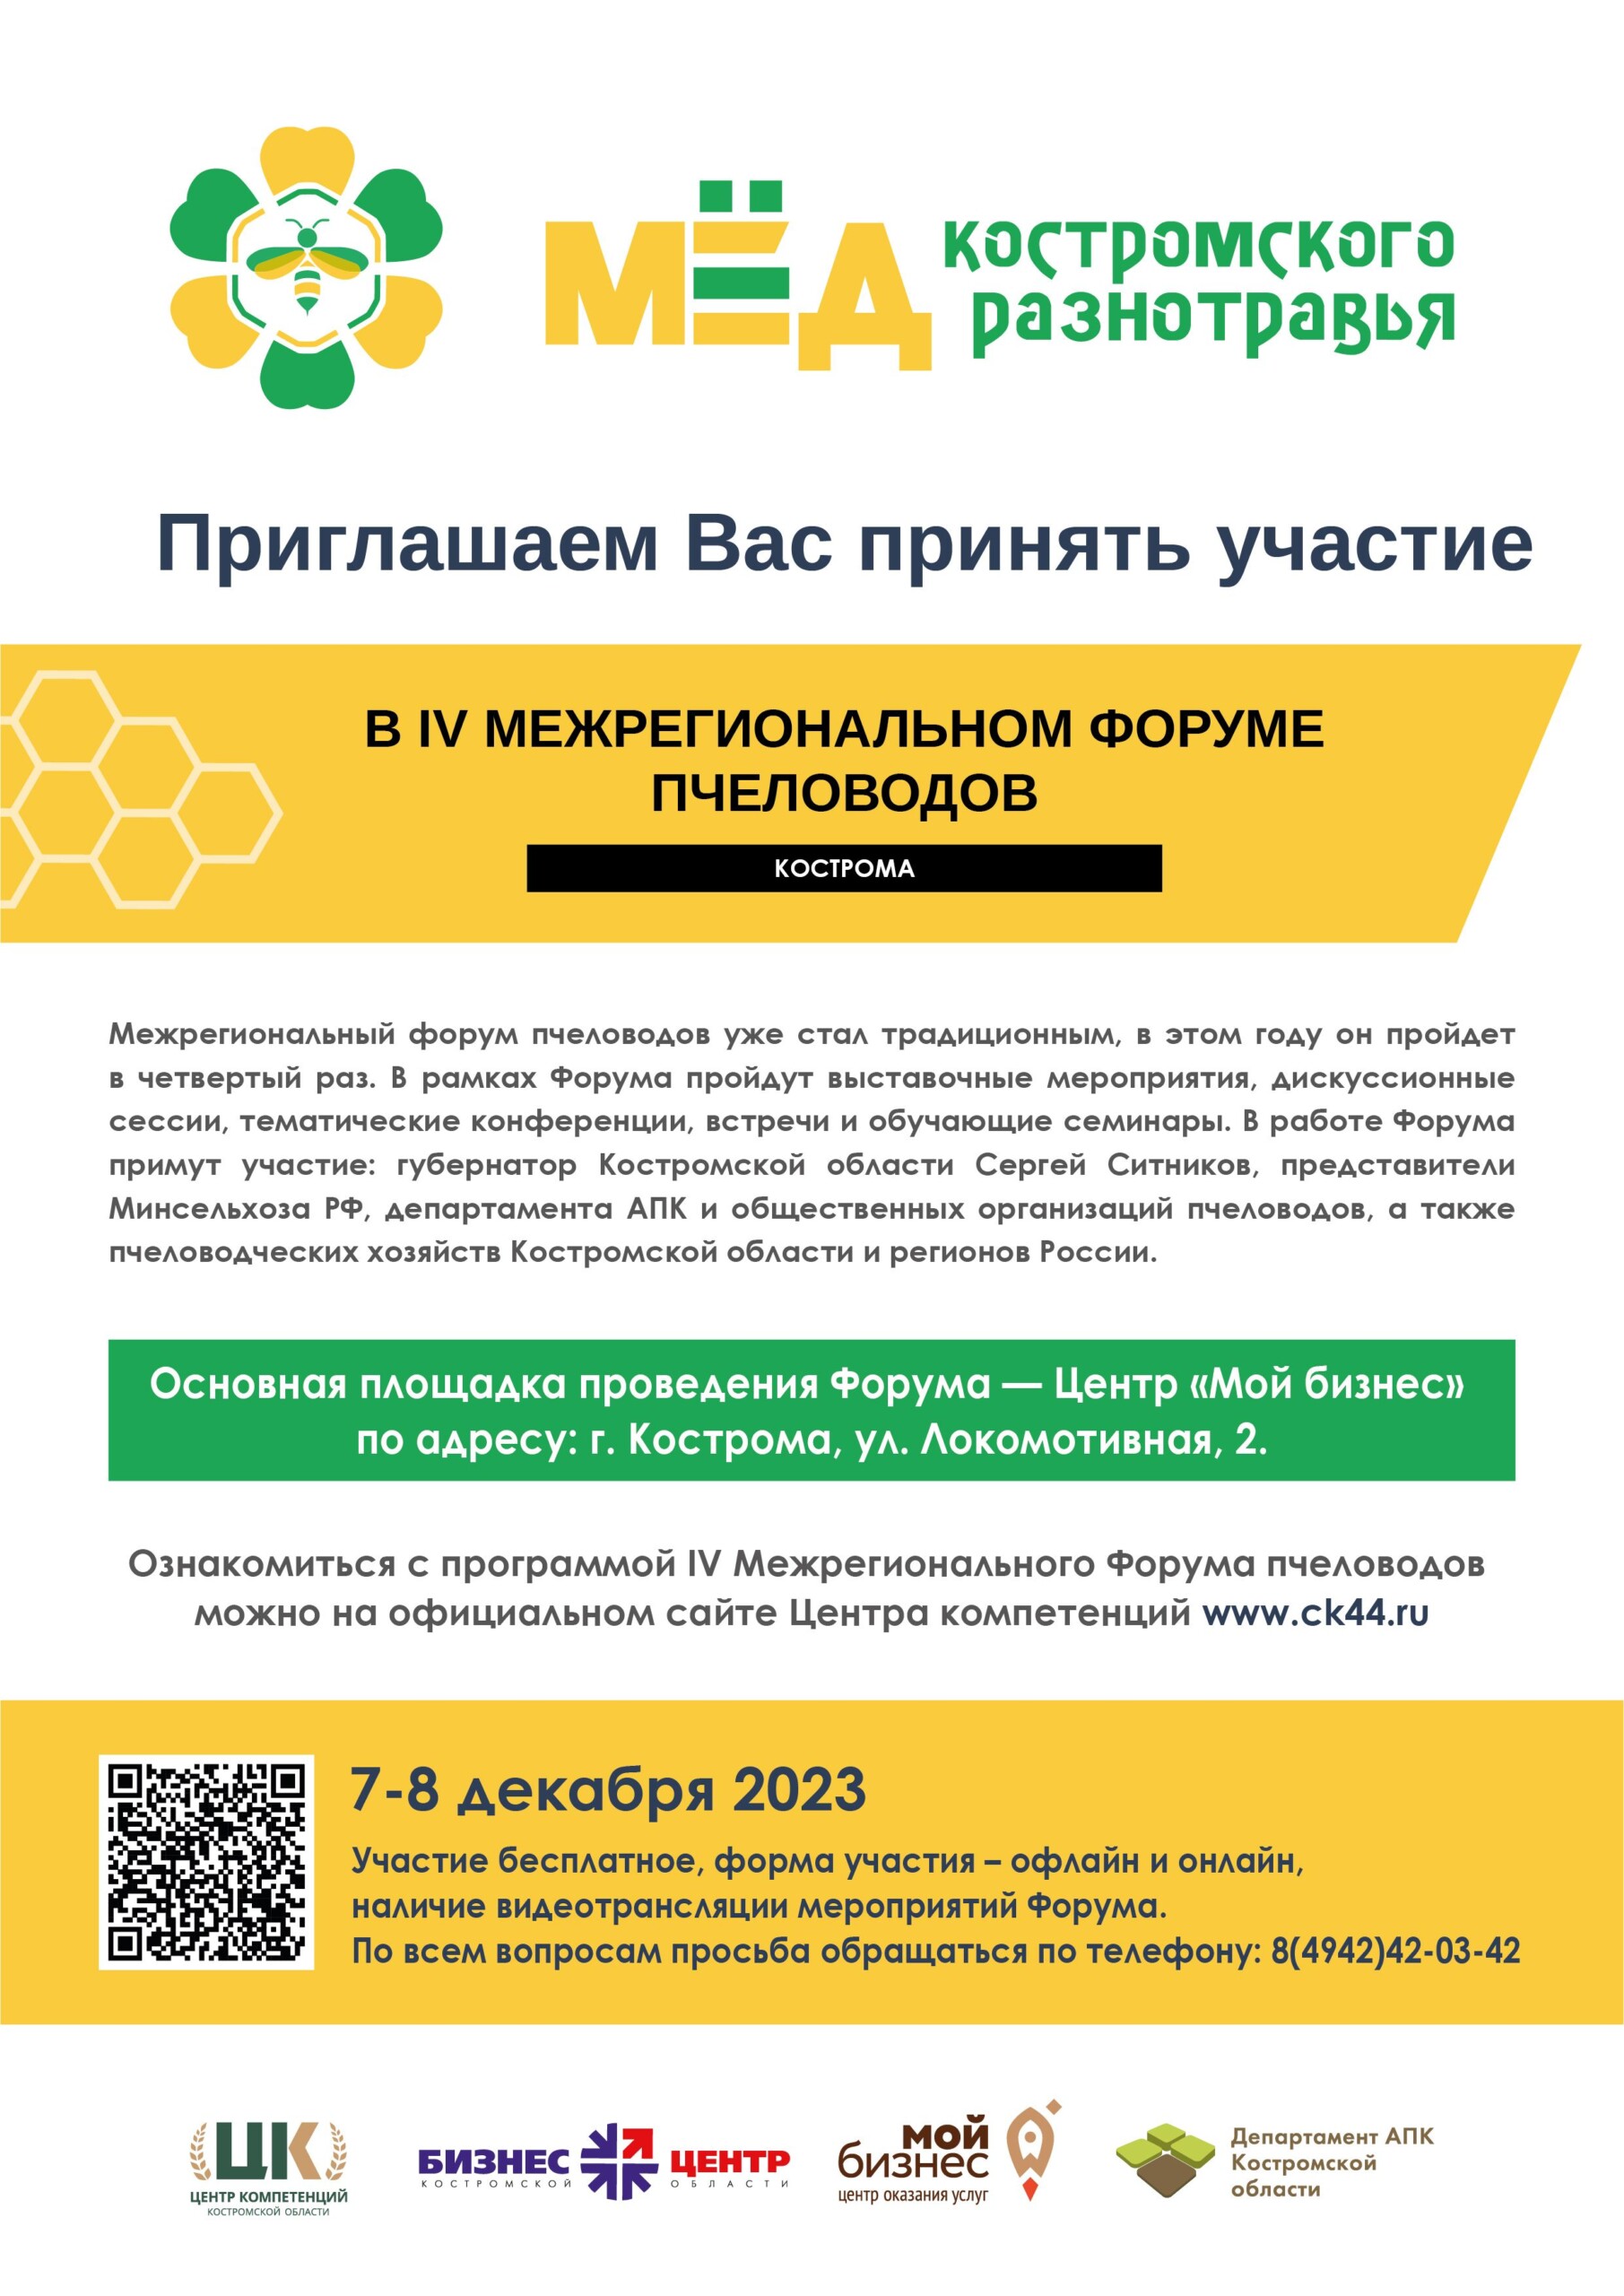 Межрегиональный форум пчеловодов пройдет в Костроме